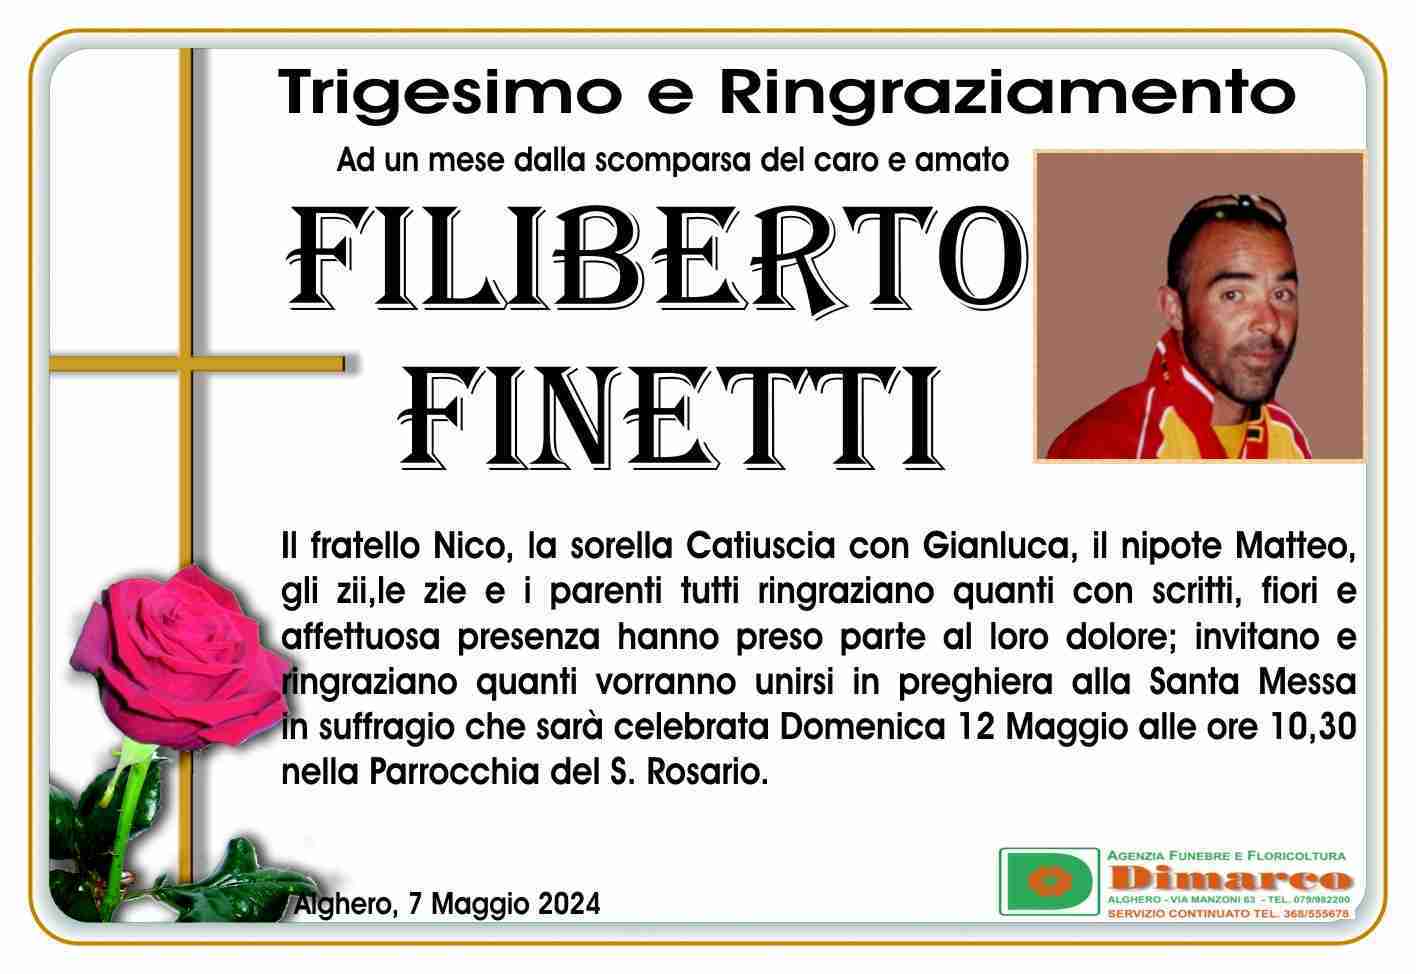 Filiberto Finetti